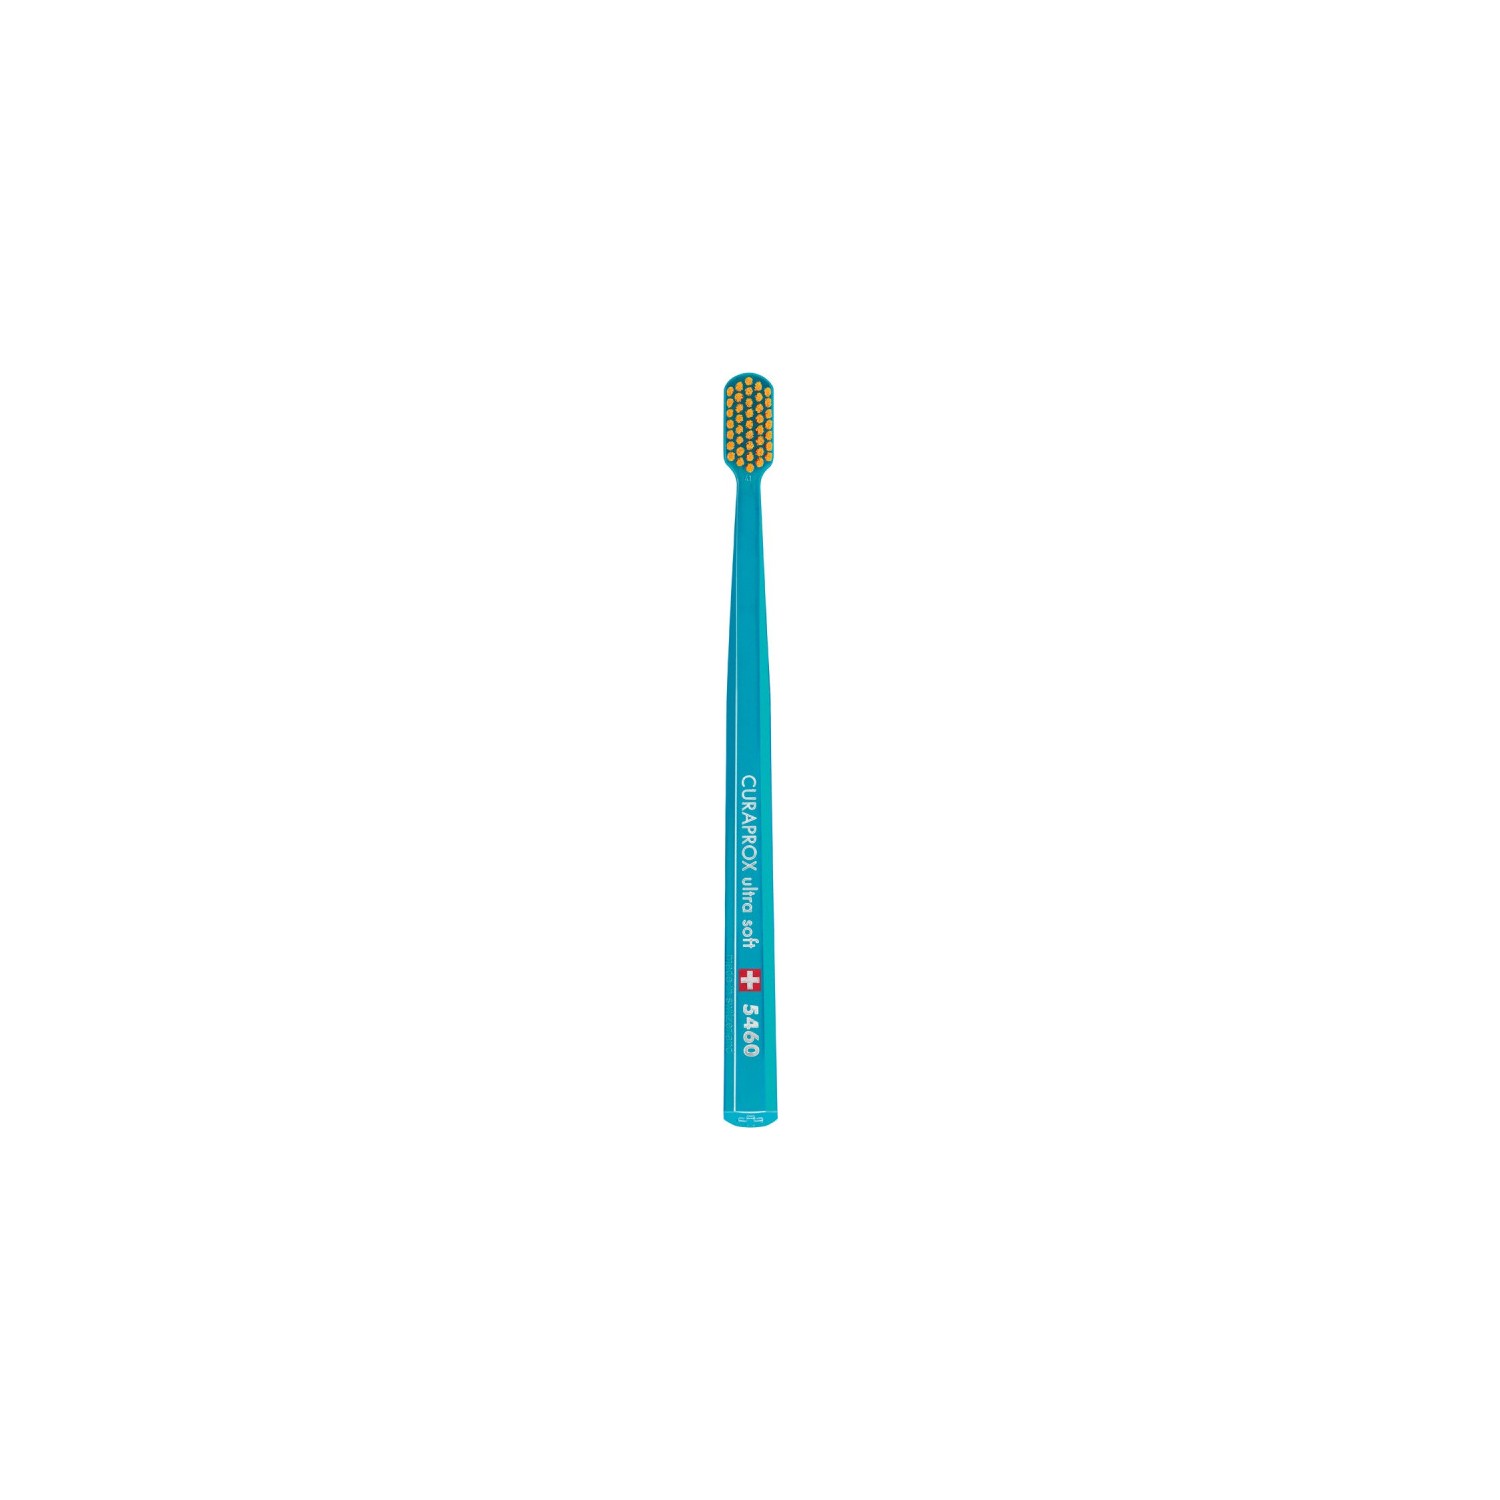 Зубная щетка Curaprox ультрамягкая CS5460, бирюзовый household electric toothbrush usb charging soft hair waterproof wave vibration toothbrush